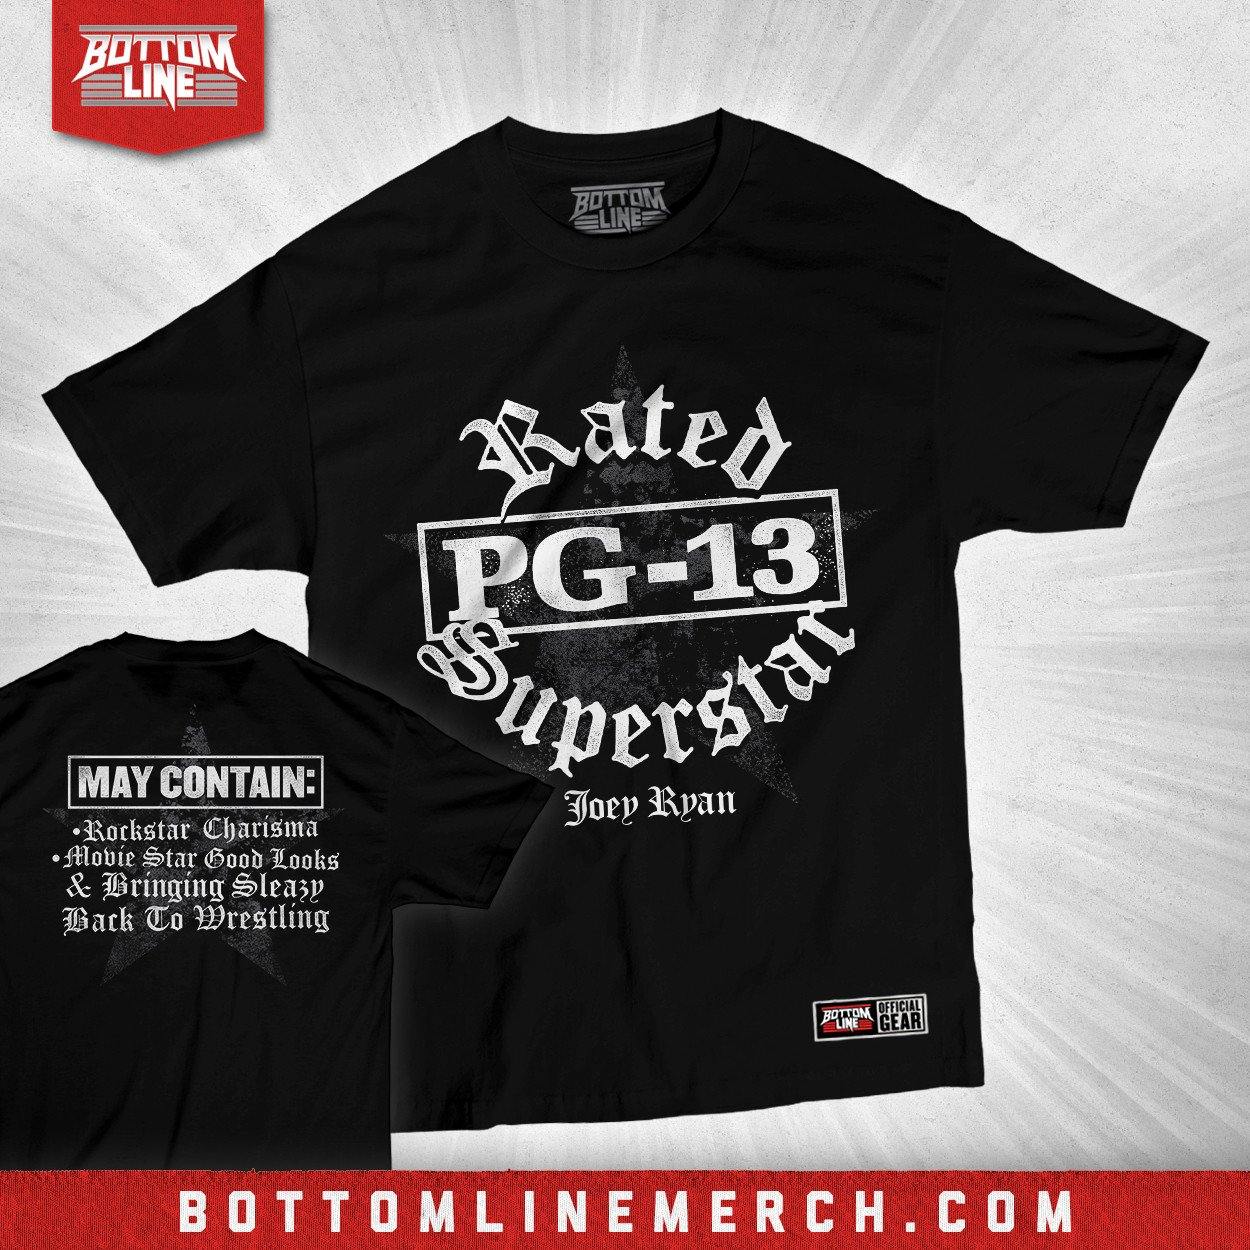 Buy Now – Joey Ryan "Rated PG-13 Superstar" Shirt – Wrestler & Wrestling Merch – Bottom Line